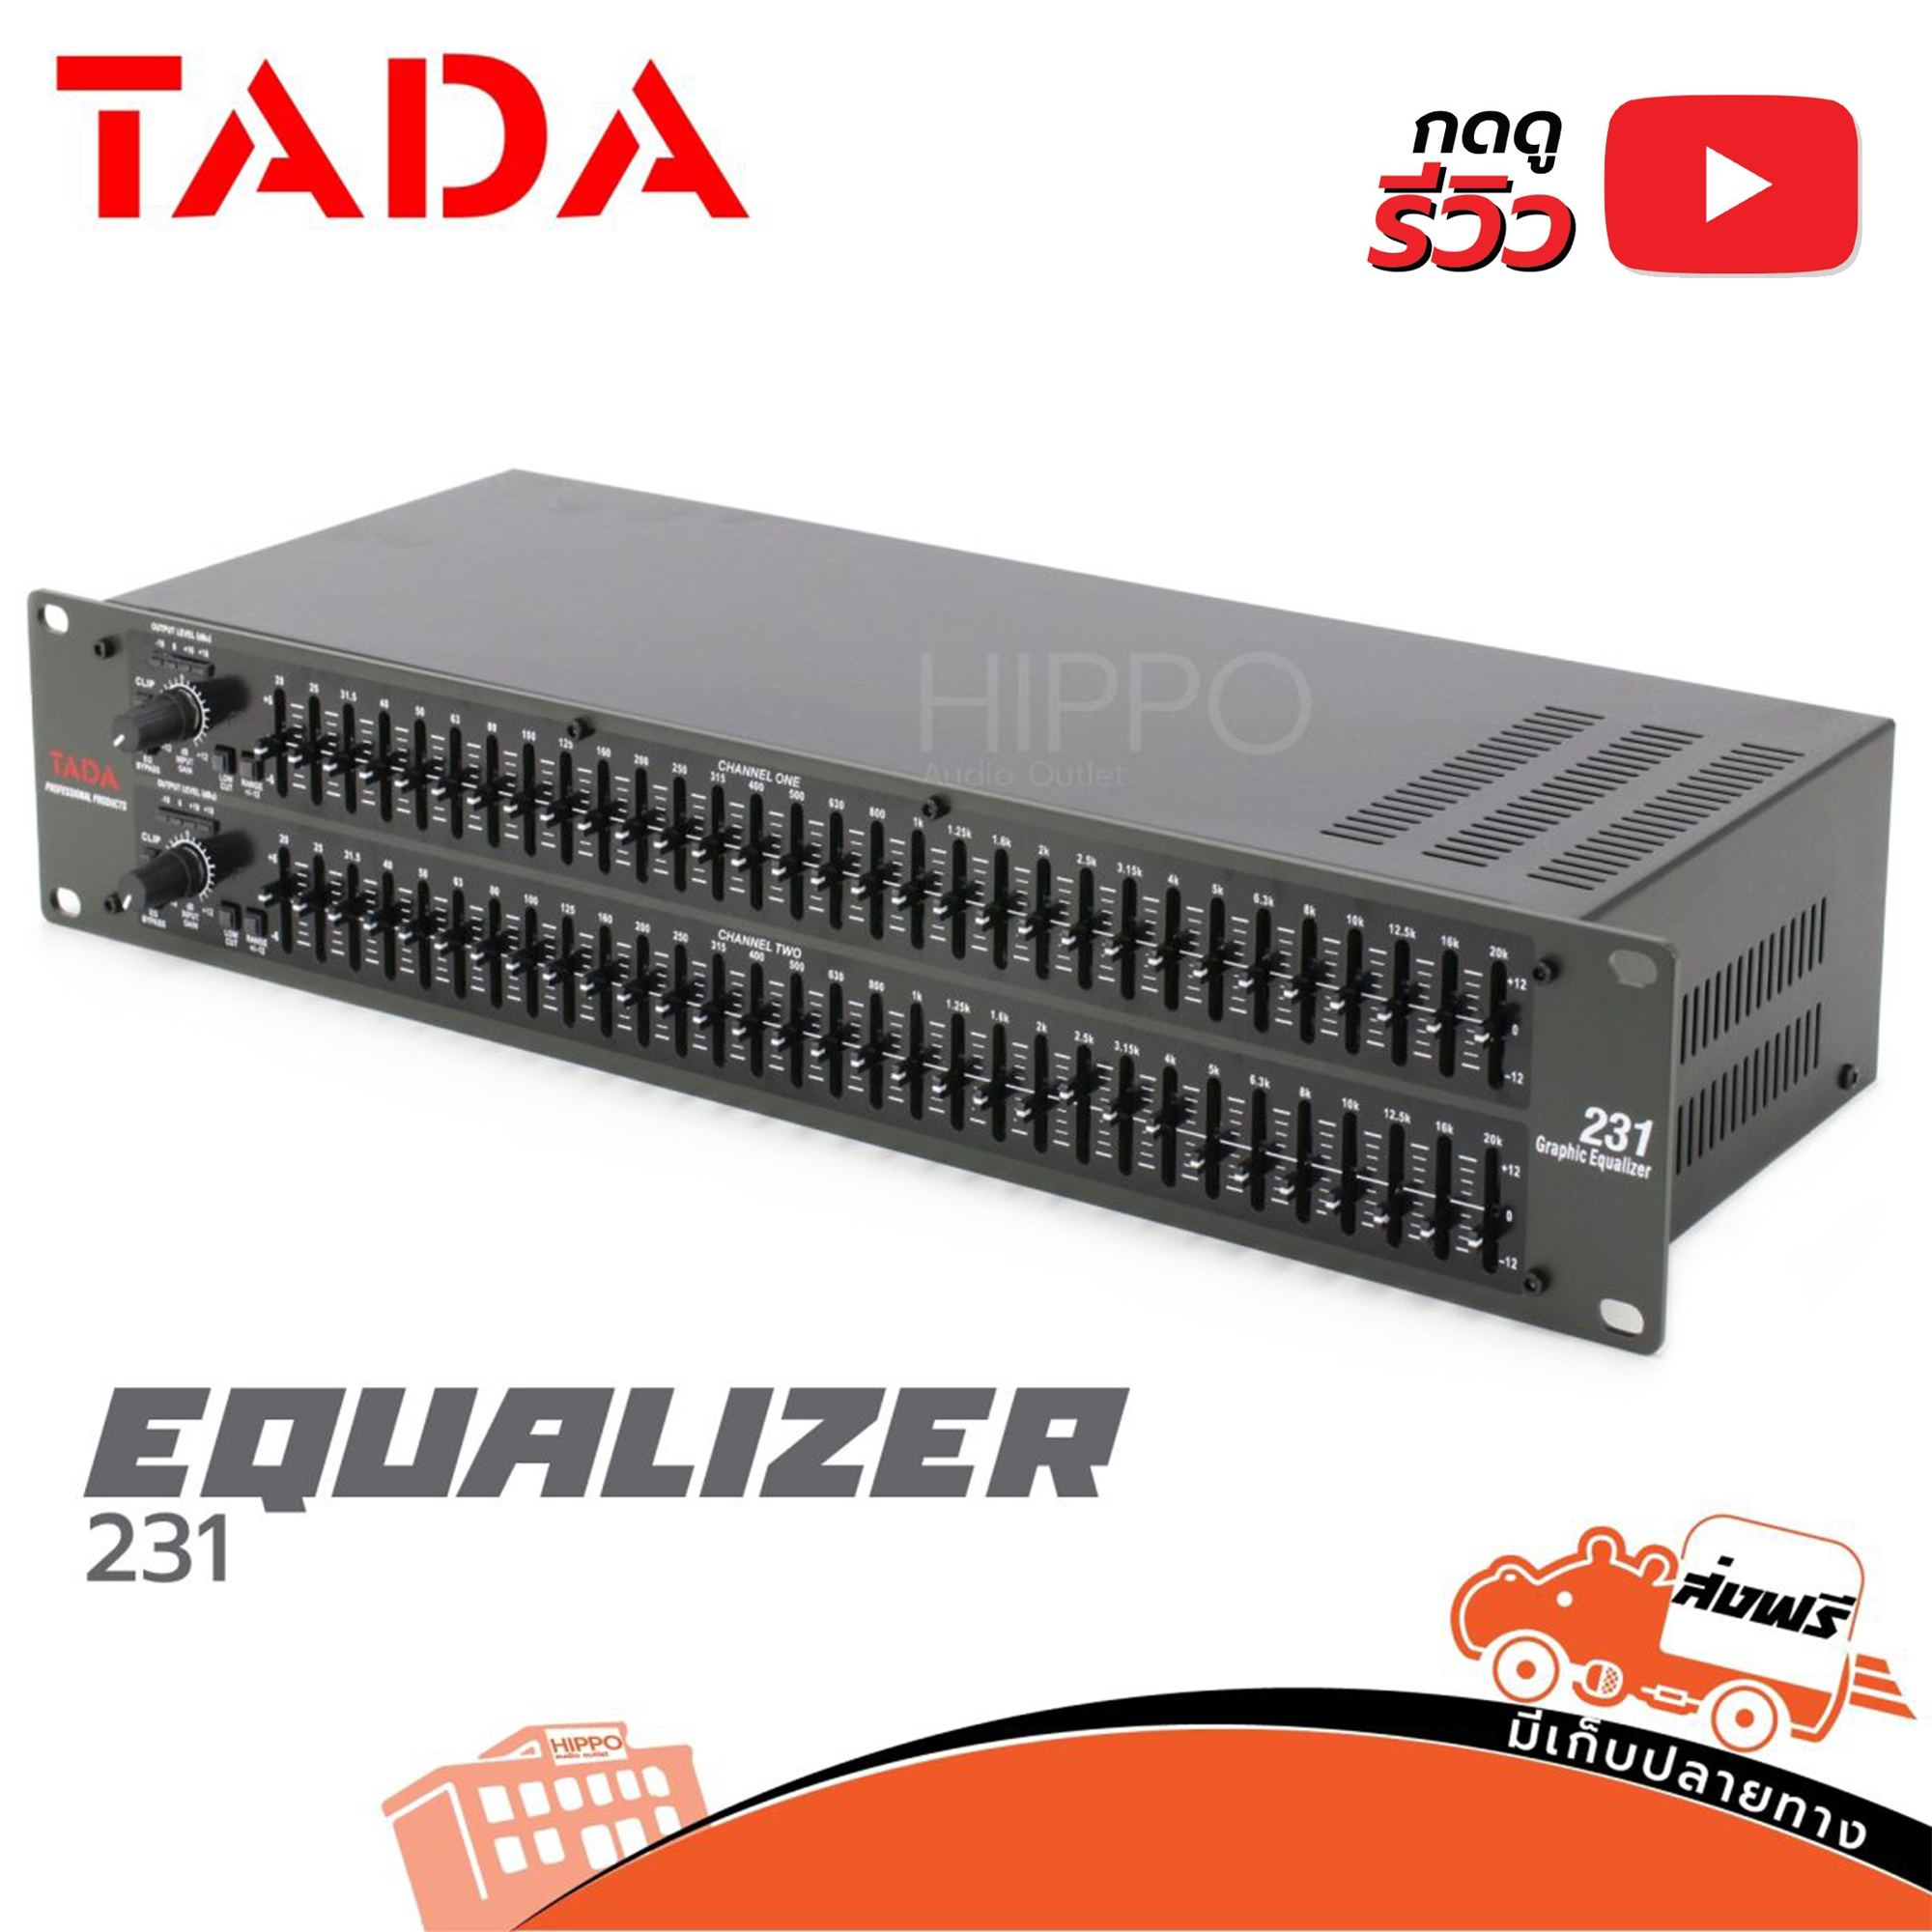 TADA CE 231 EQ เครื่องปรับแต่งเสียง เครื่องปรุงเสียง อีคิว 231 tada Channel31Band ขนาด2U ยึดติดแร็คได้ อีควอไลเซอร์ equalizer EQ Hippo Audio ฮิปโป ออดิโอ